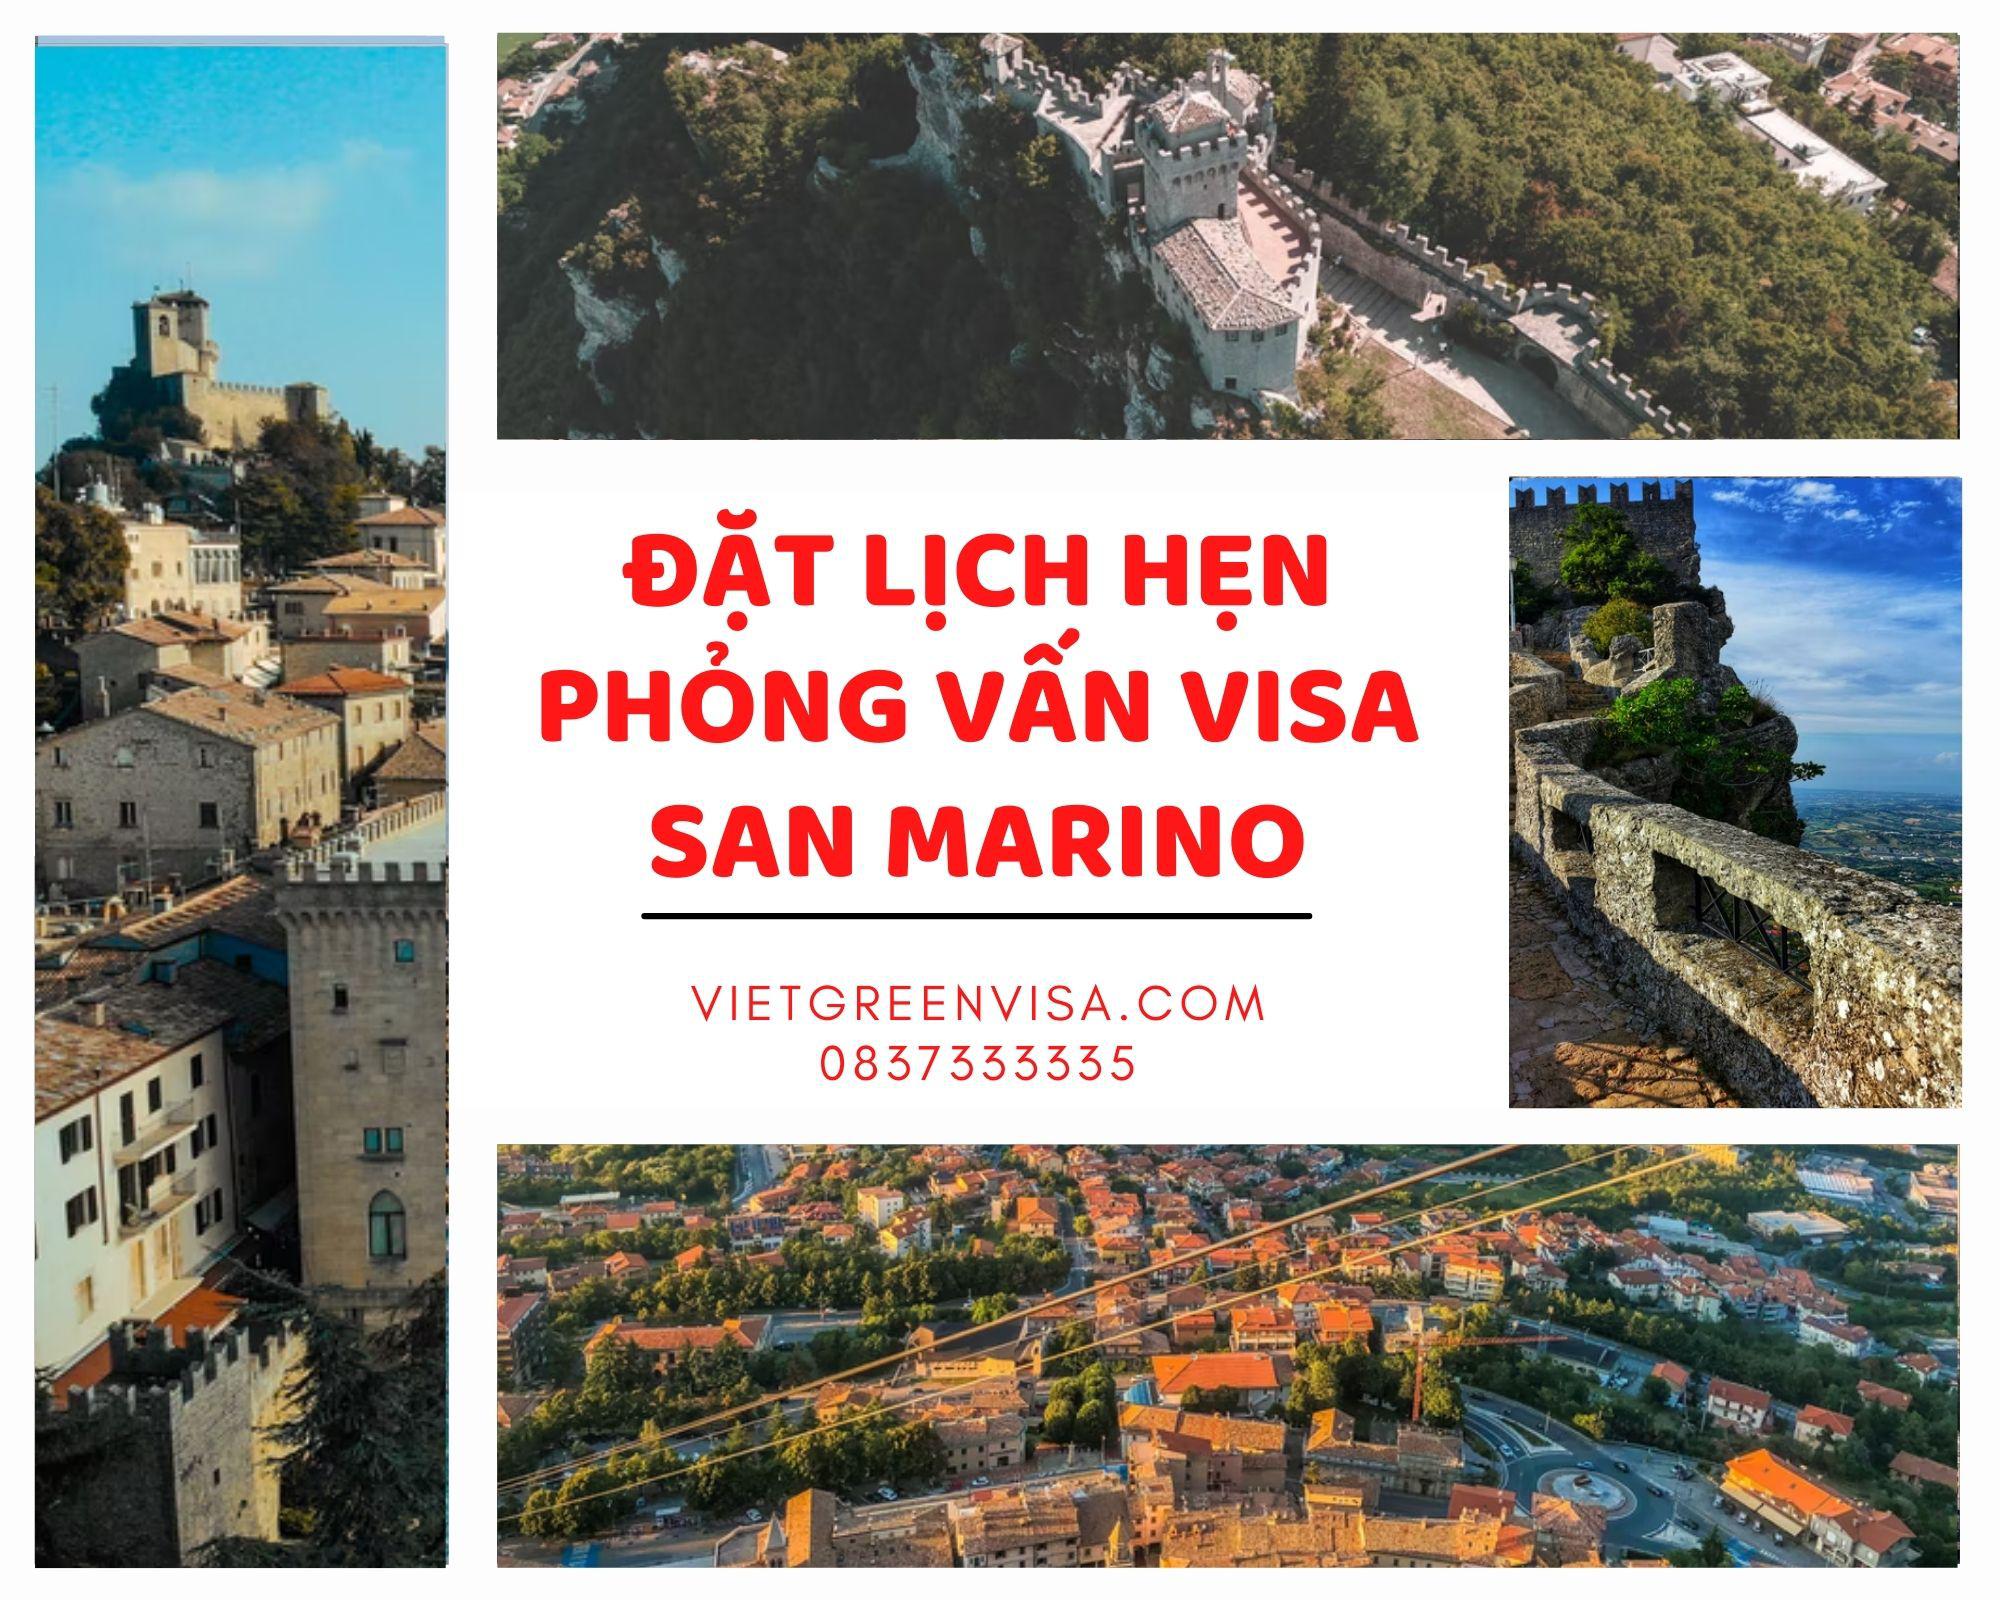 Tư vấn đặt lịch hẹn phỏng vấn visa San Marino